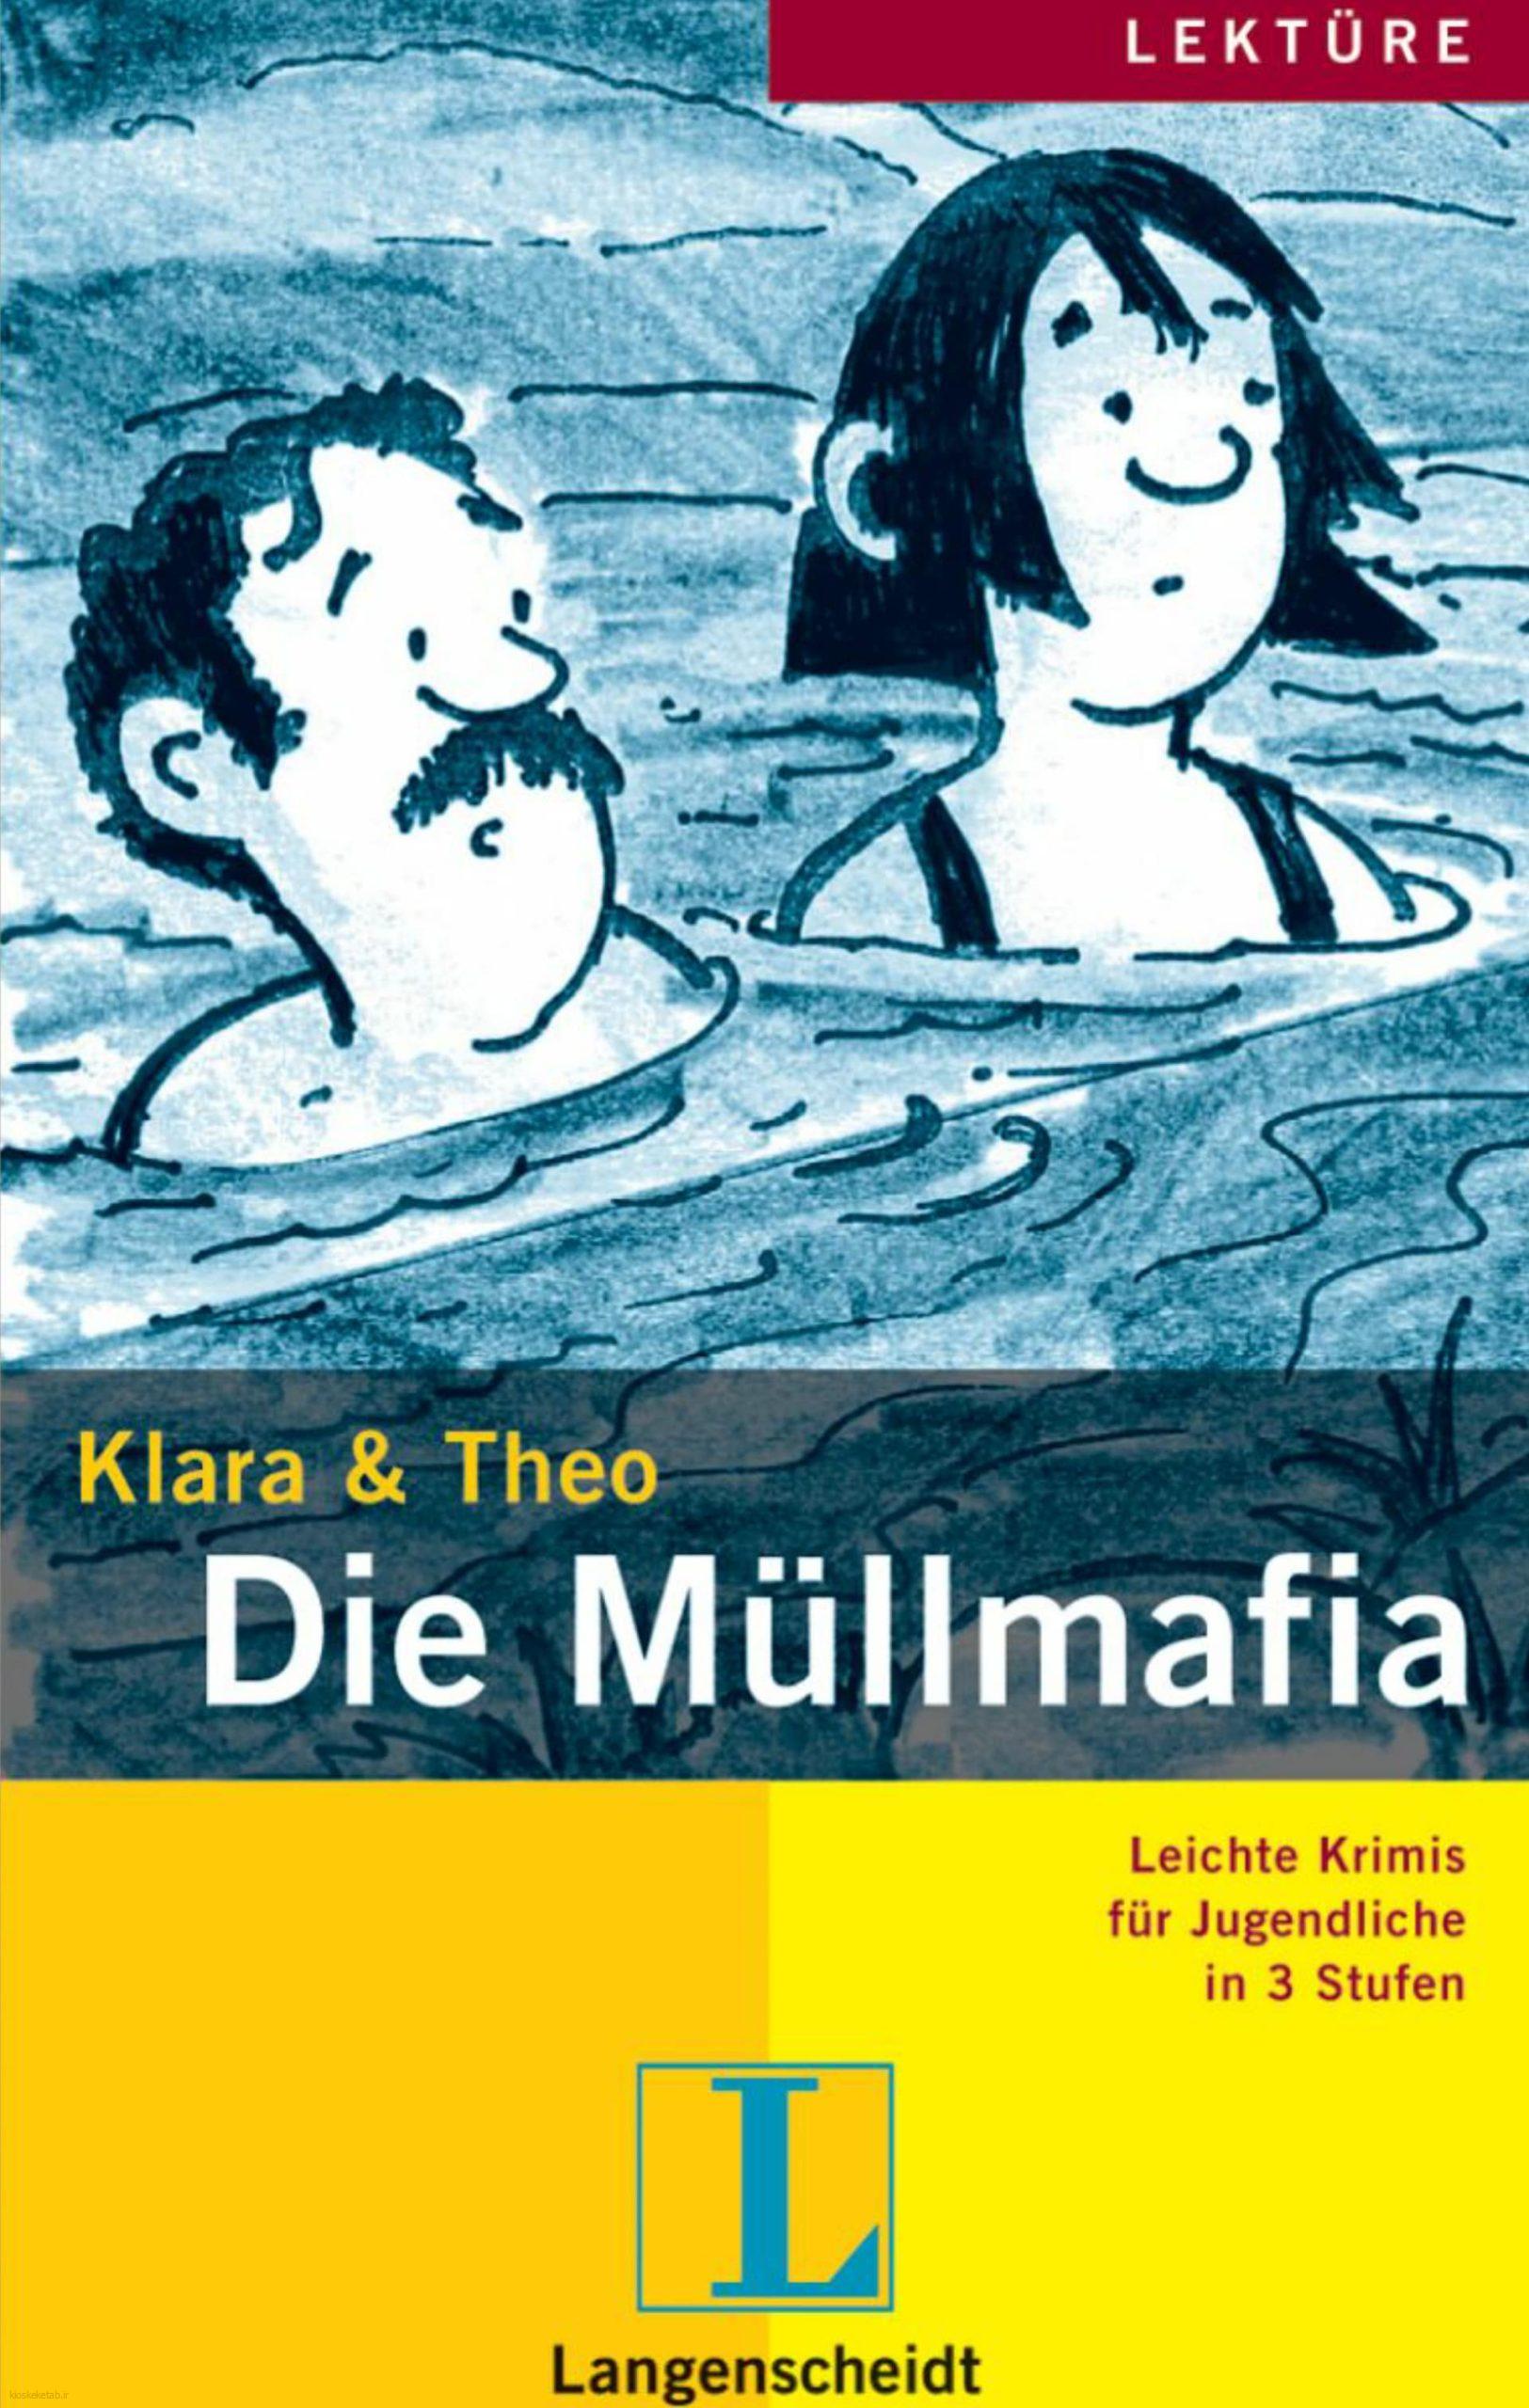 دانلود کتاب آلمانیdie mullmafia